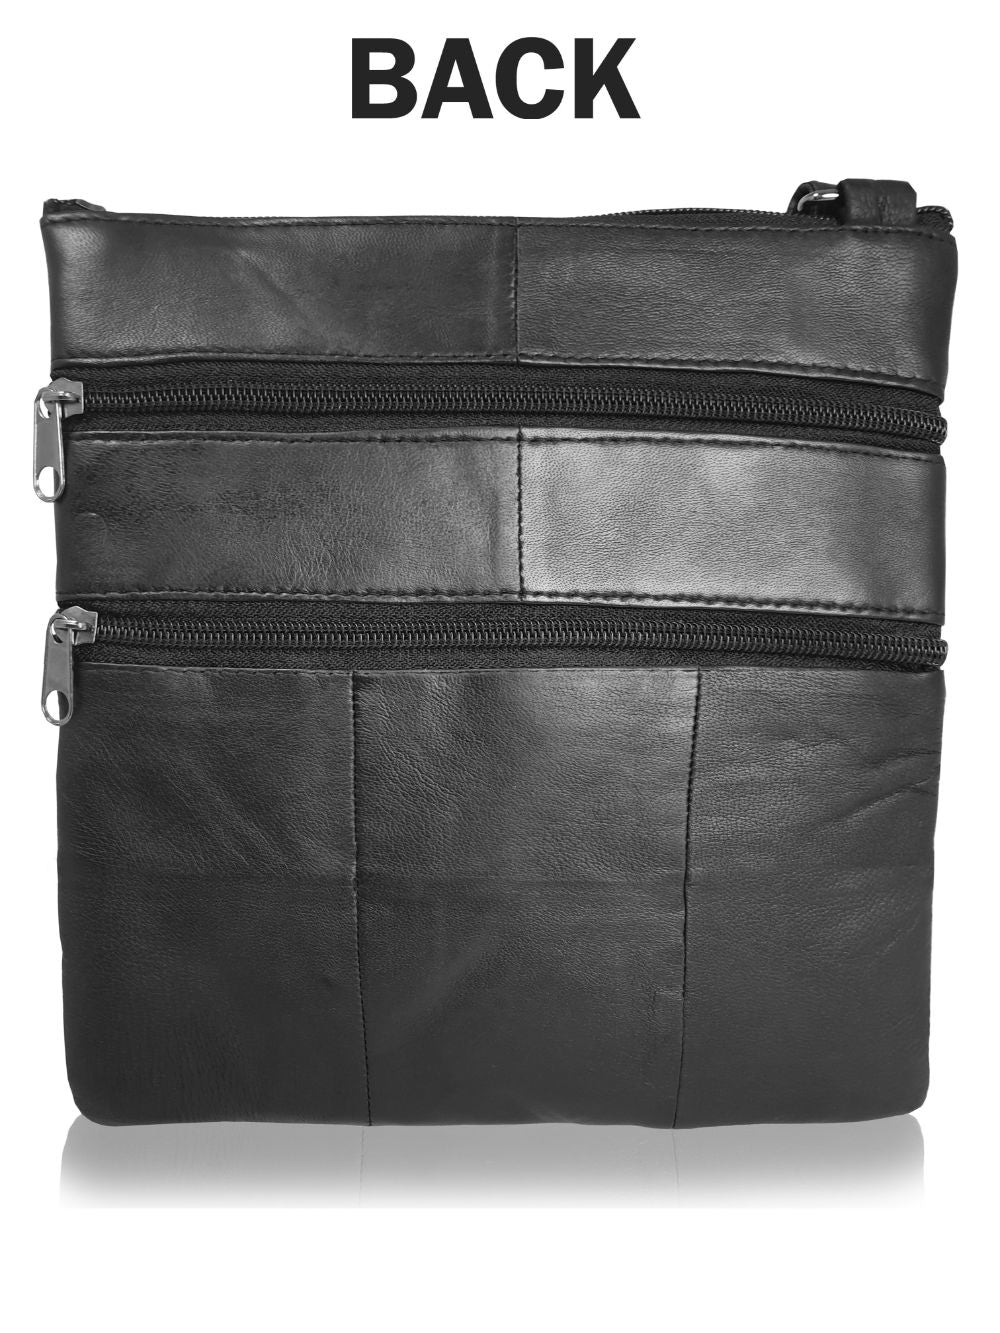 Roamlite Mens Travel pouch black leather RL178 back